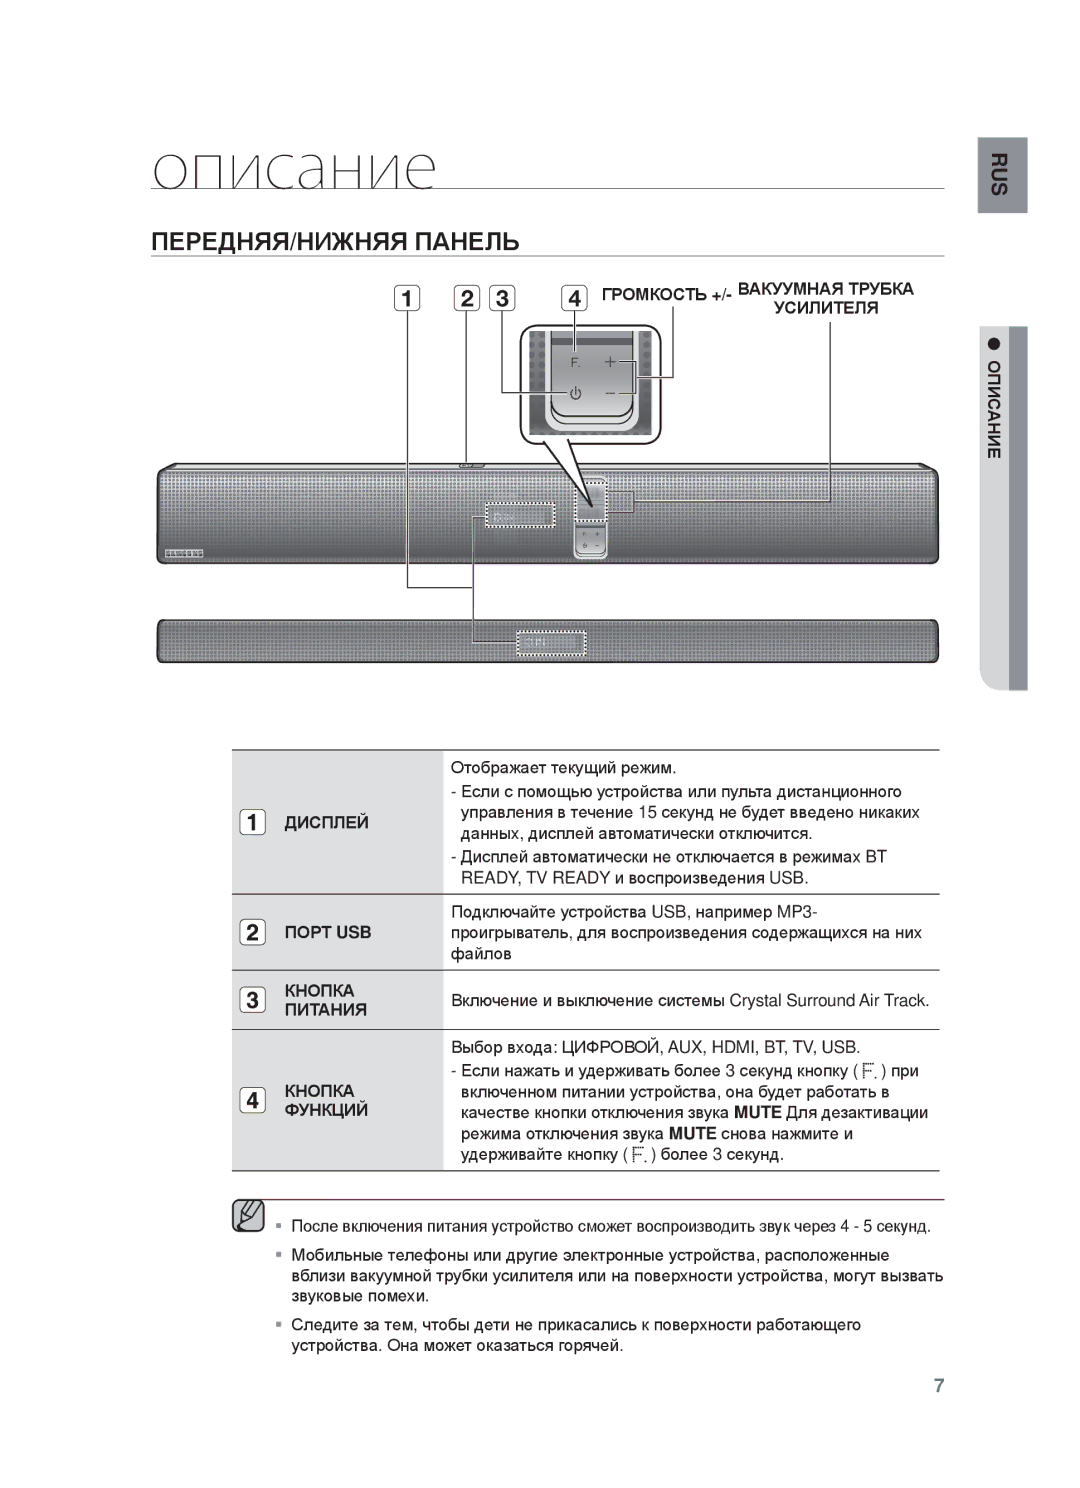 Samsung HW-F750/RU manual Описание, ПȿɊȿДɇЯЯ/ɇИЖɇЯЯ ПȺɇȿЛЬ 